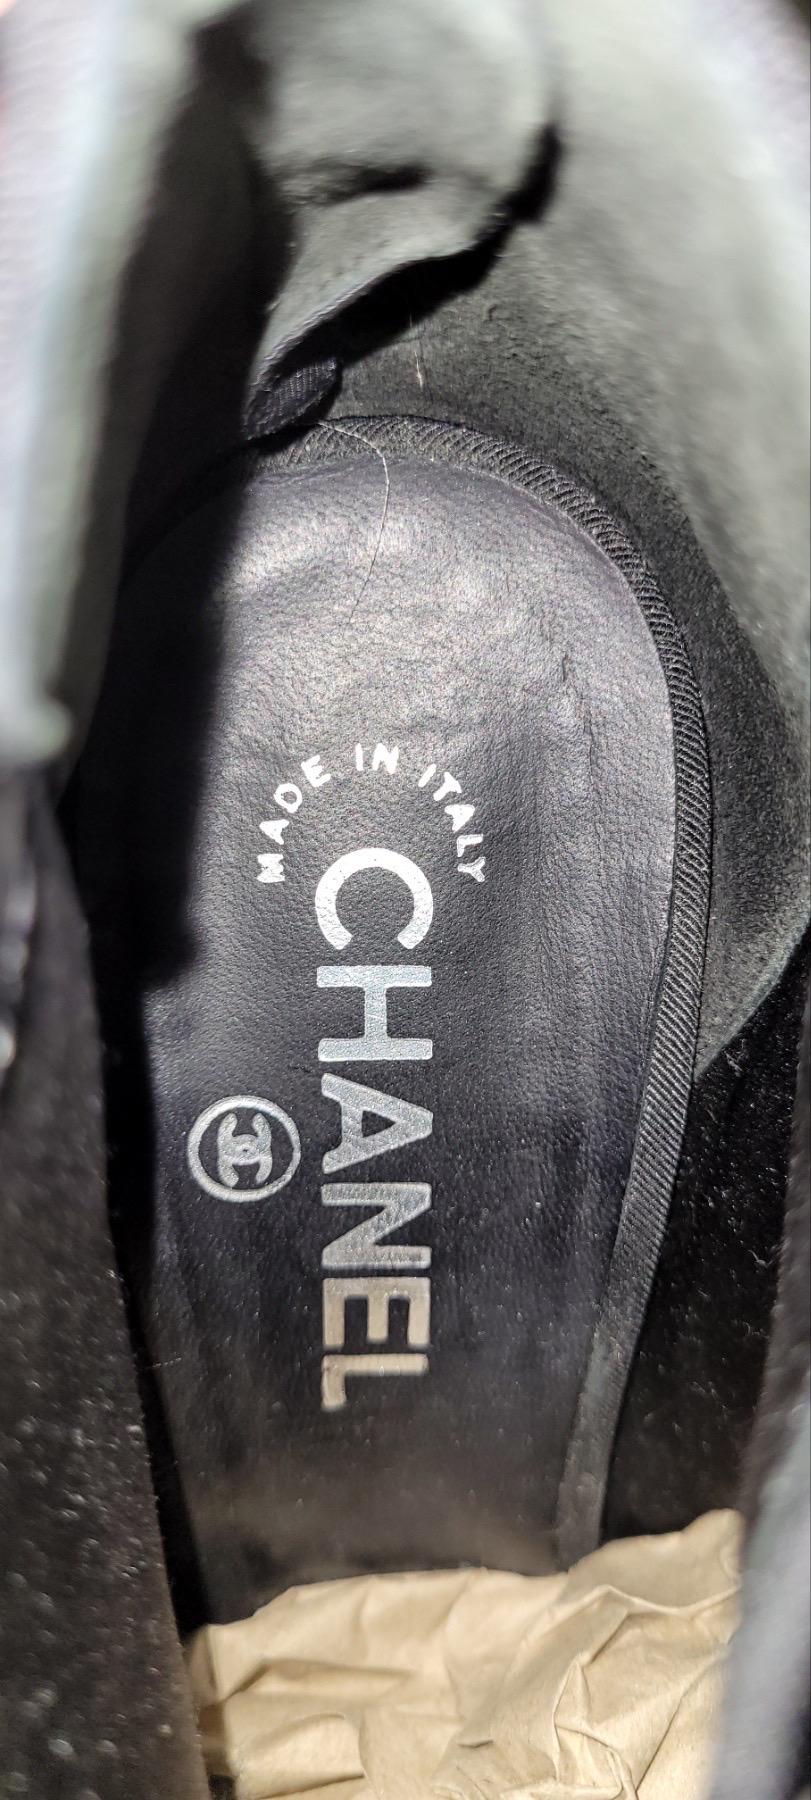 Bottines à bout ouvert en textile de Chanel

Depuis 2009.

Excellent état.

Pas de boîte. Pas de sac à poussière